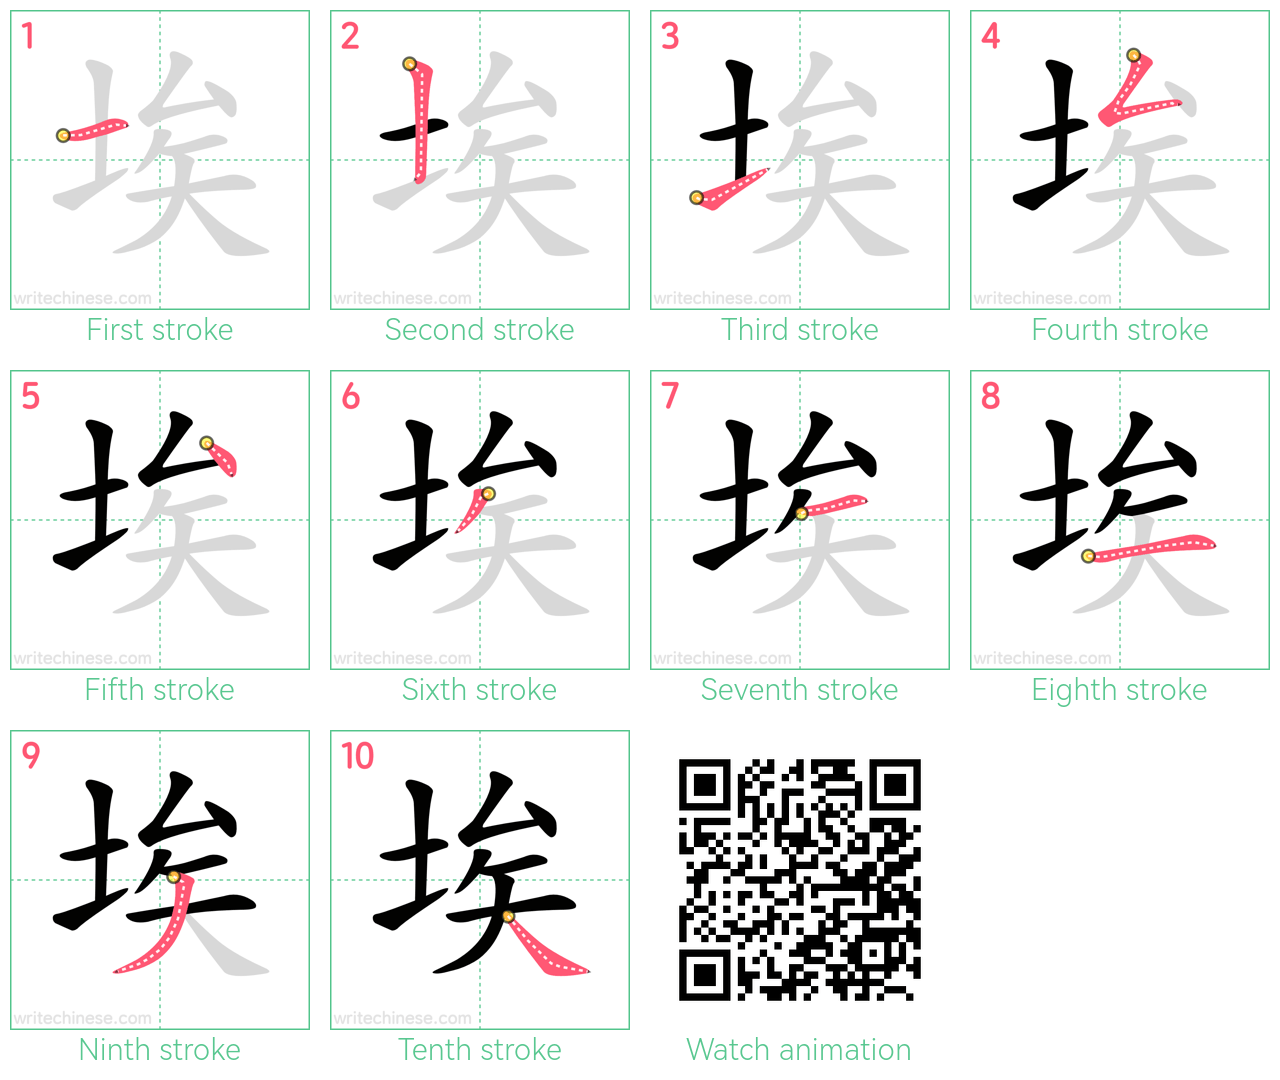 埃 step-by-step stroke order diagrams